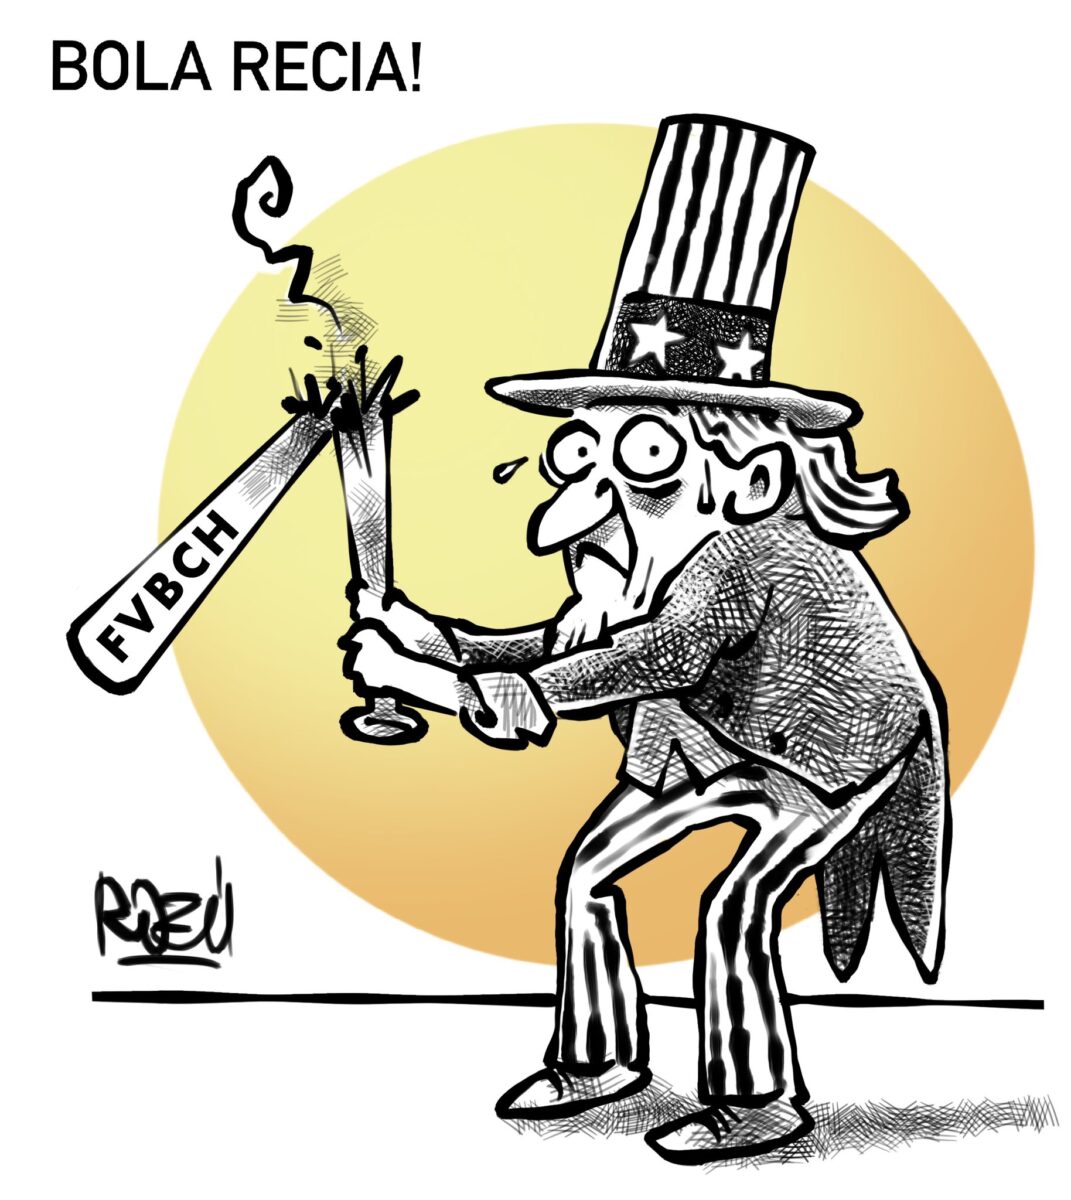 Estados Unidos acosa a Nicaragua Por Gustavo Espinoza Montesinos